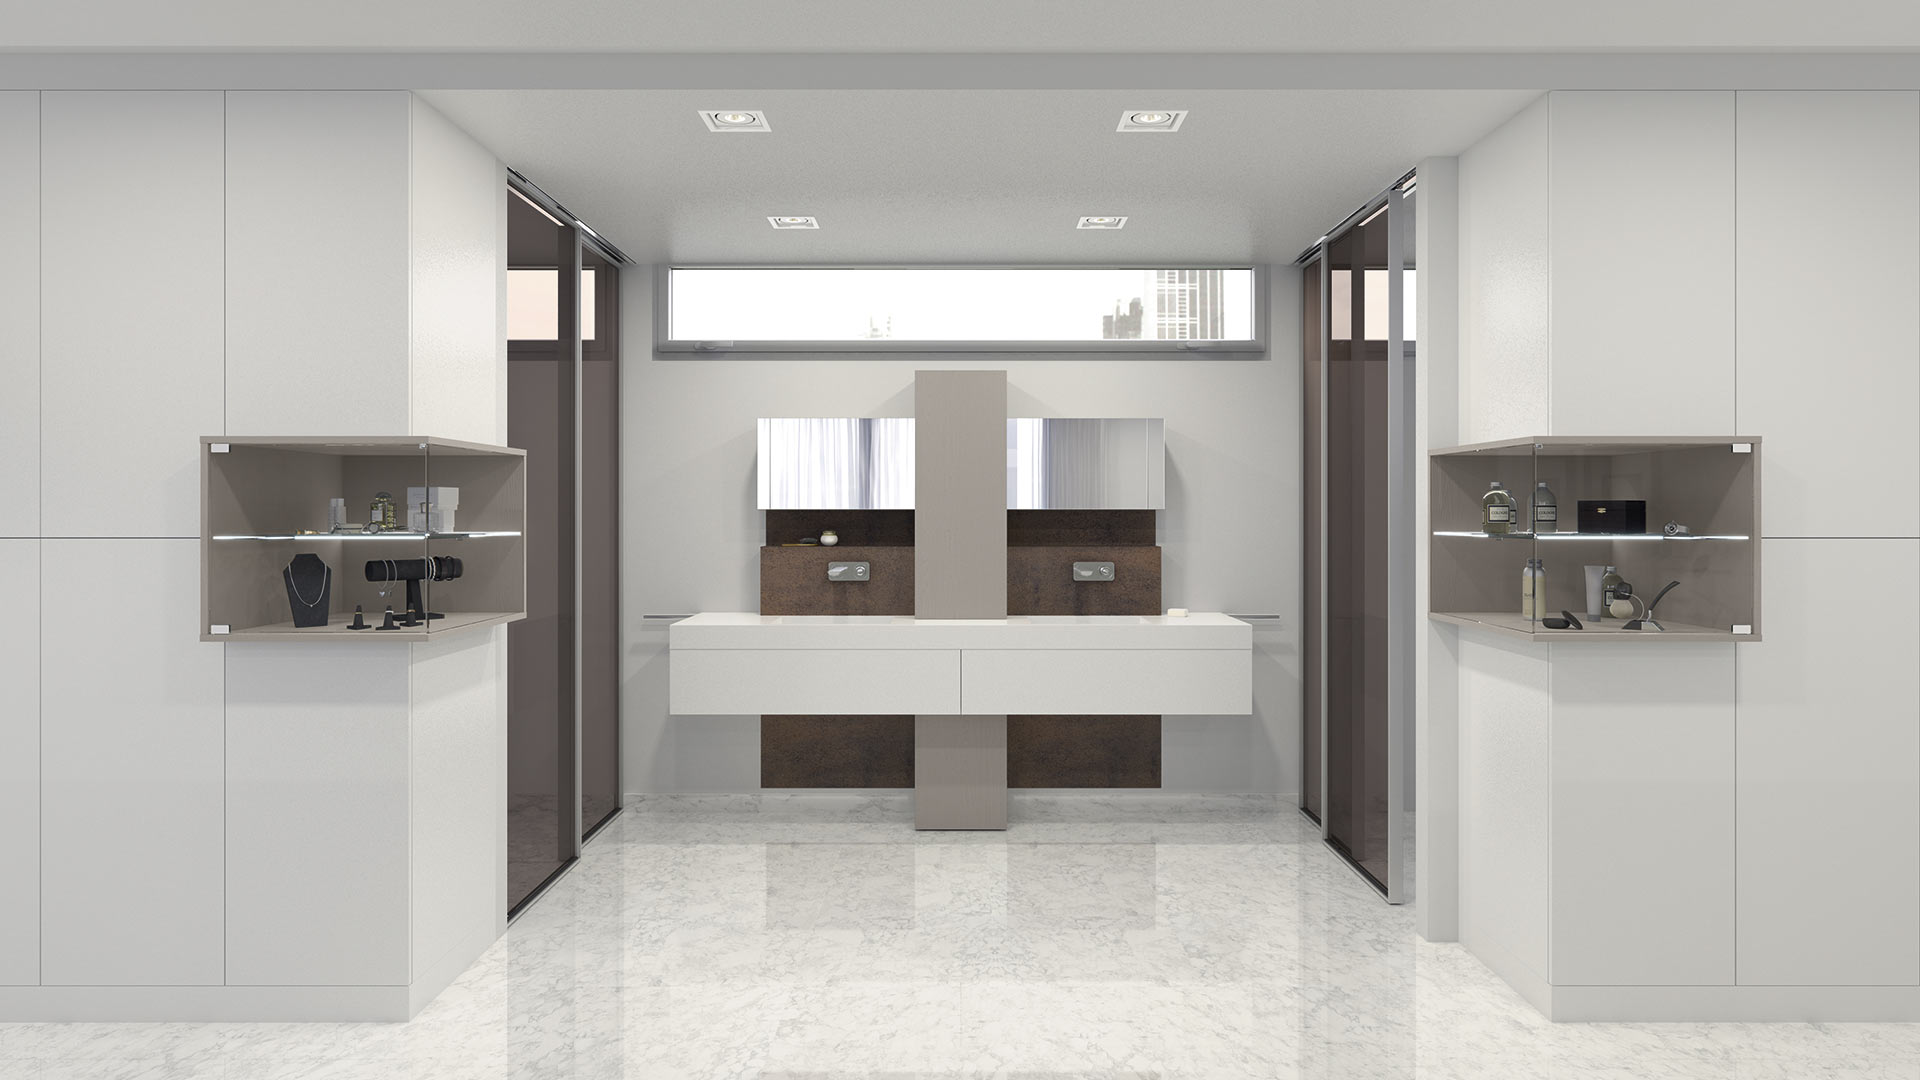 Muebles de baño de diseño similar a un tocador que combinan diversos acabados como el espejo, el poliester blanco mate, la madera y la cerámica